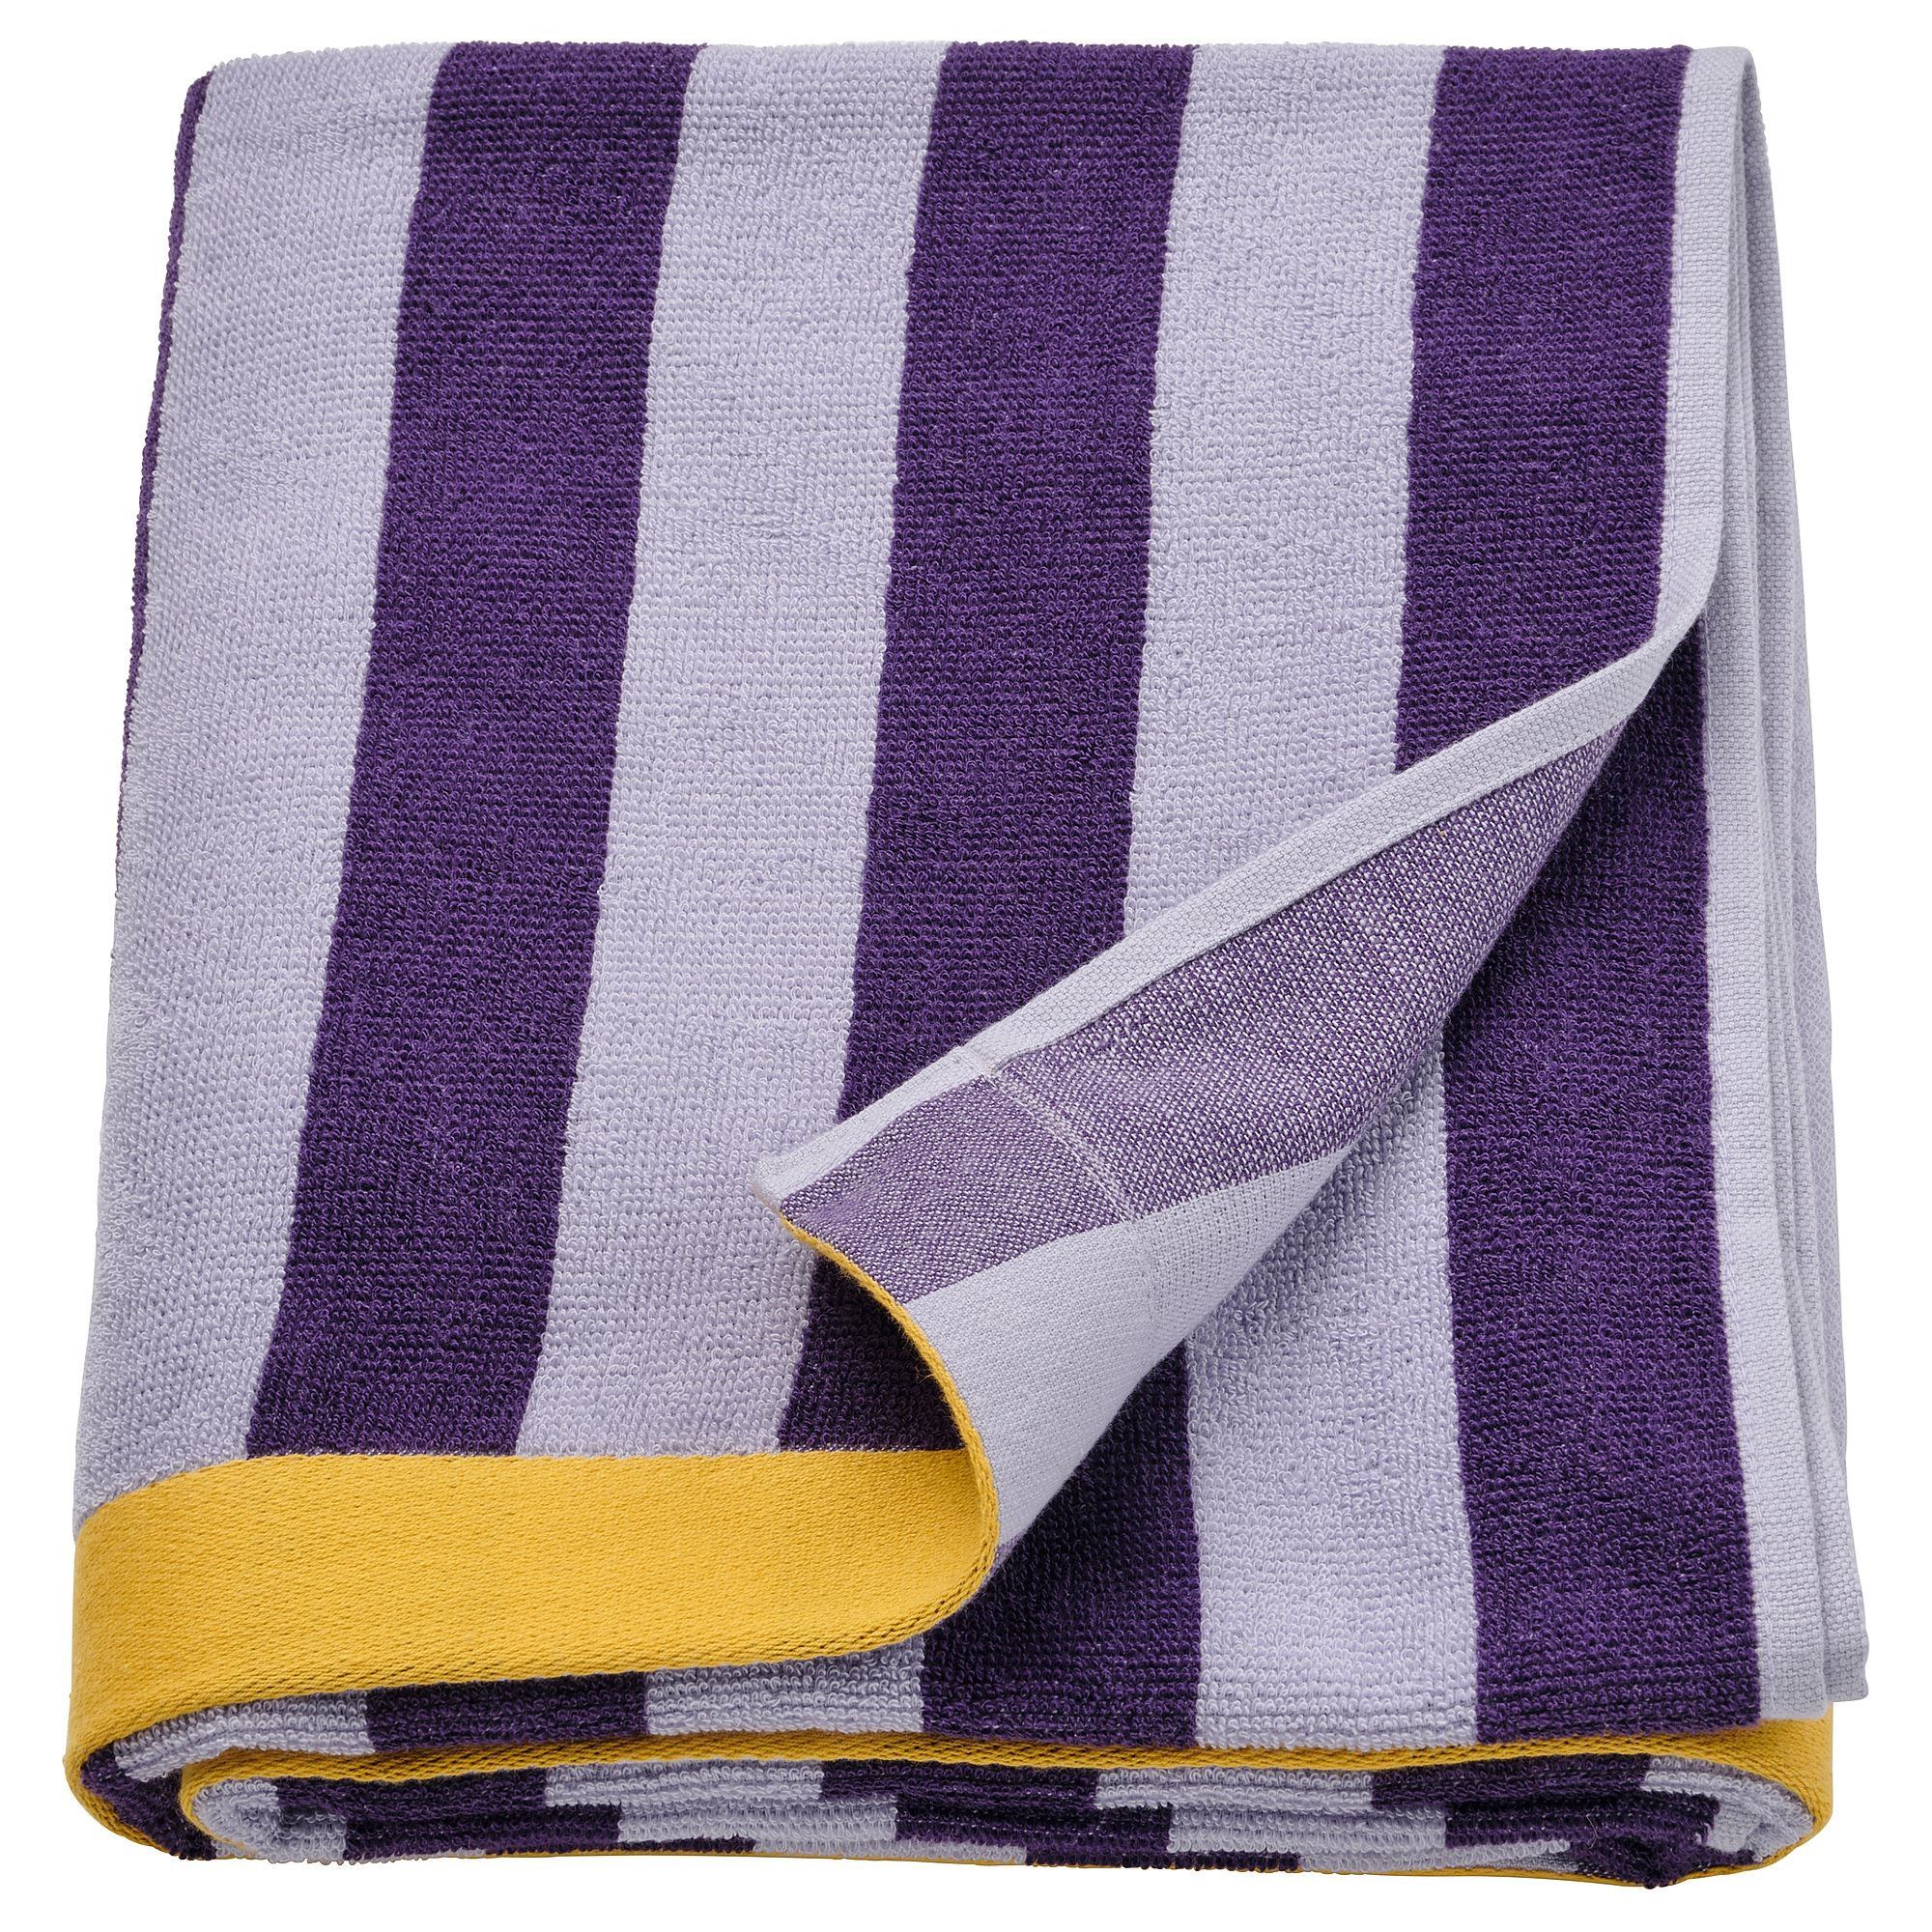 Банное полотенце, 150х100 см, Ikea Enskottmal, фиолетовый/желтый